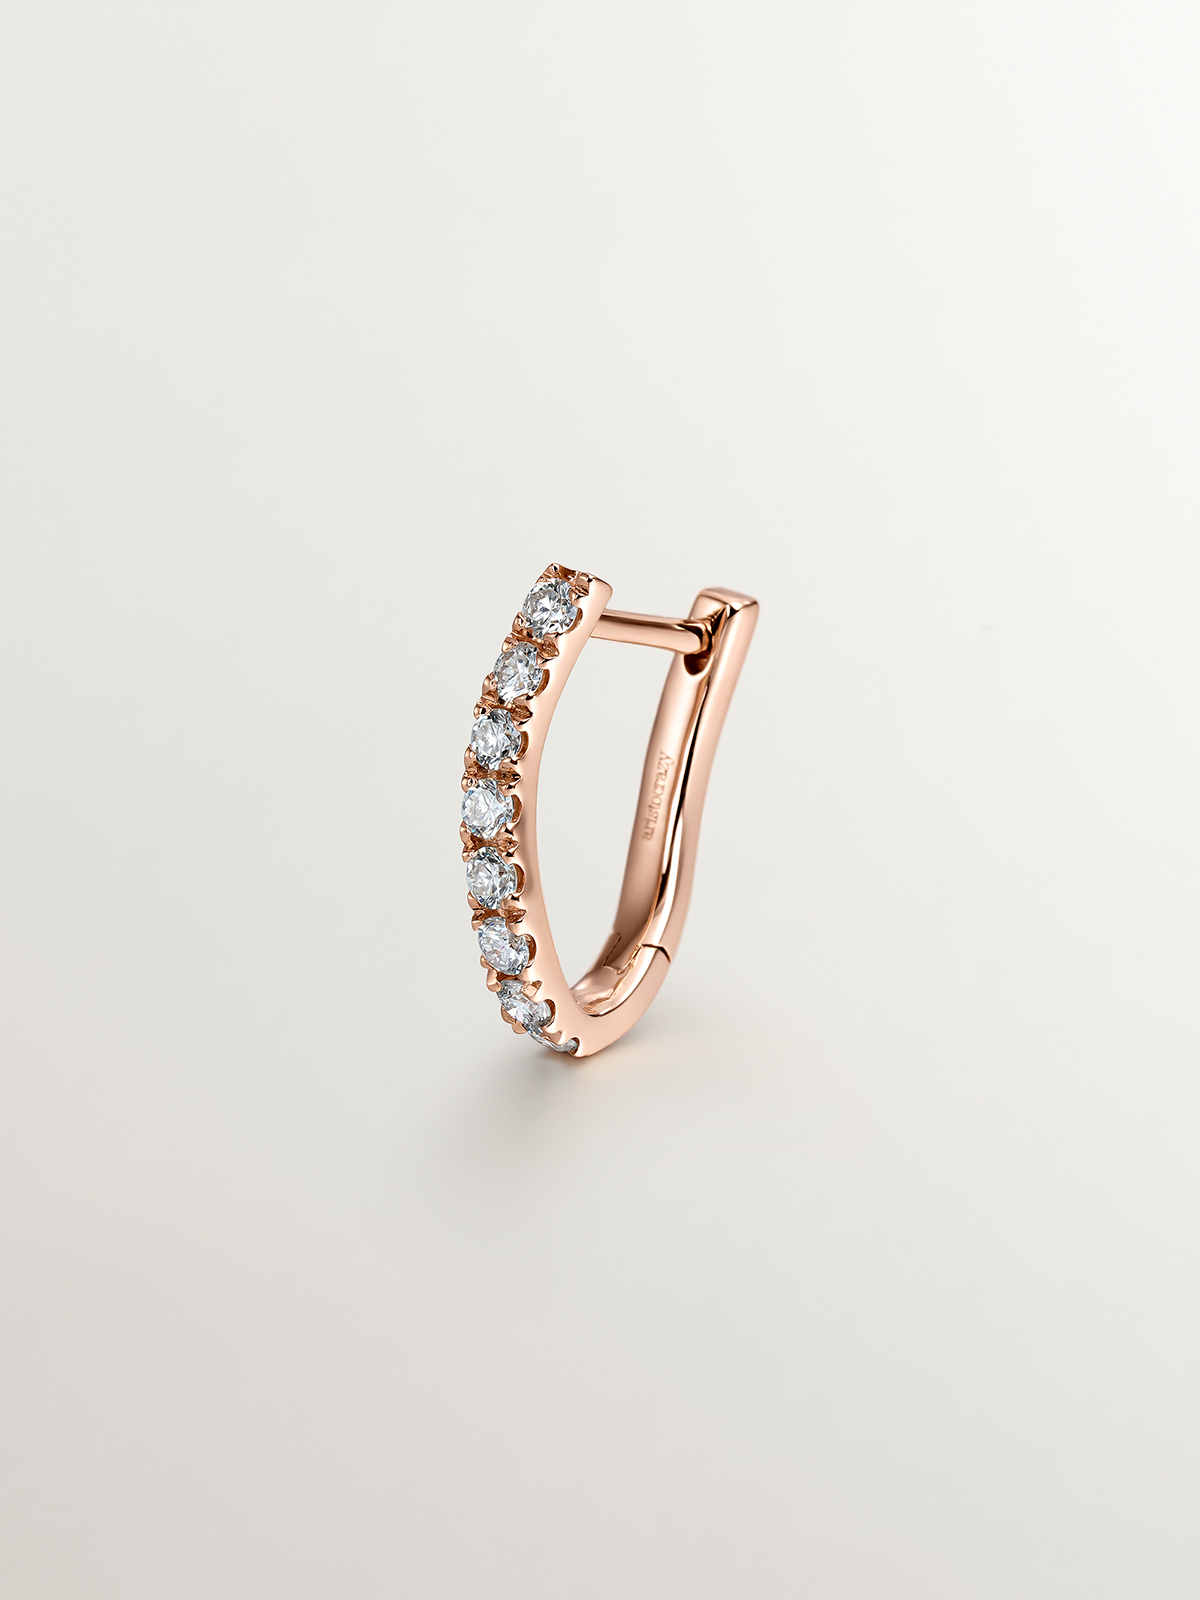 Boucle d'oreille individuelle en or rose 18K avec des diamants et une forme ondulée.